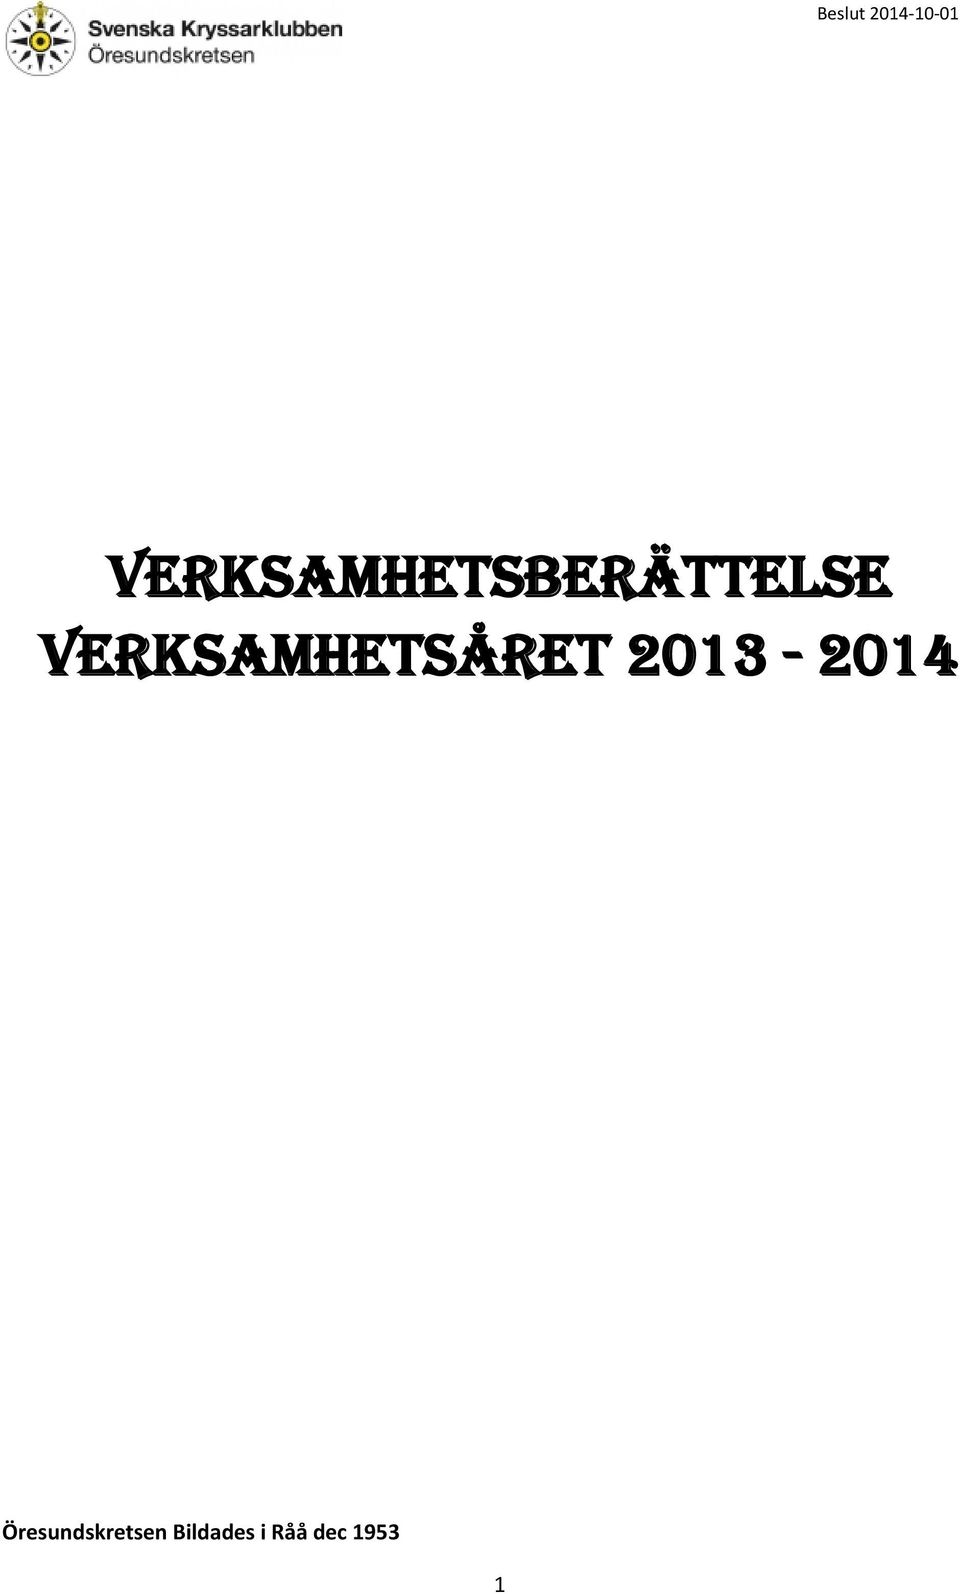 Verksamhetsåret 2013-2014